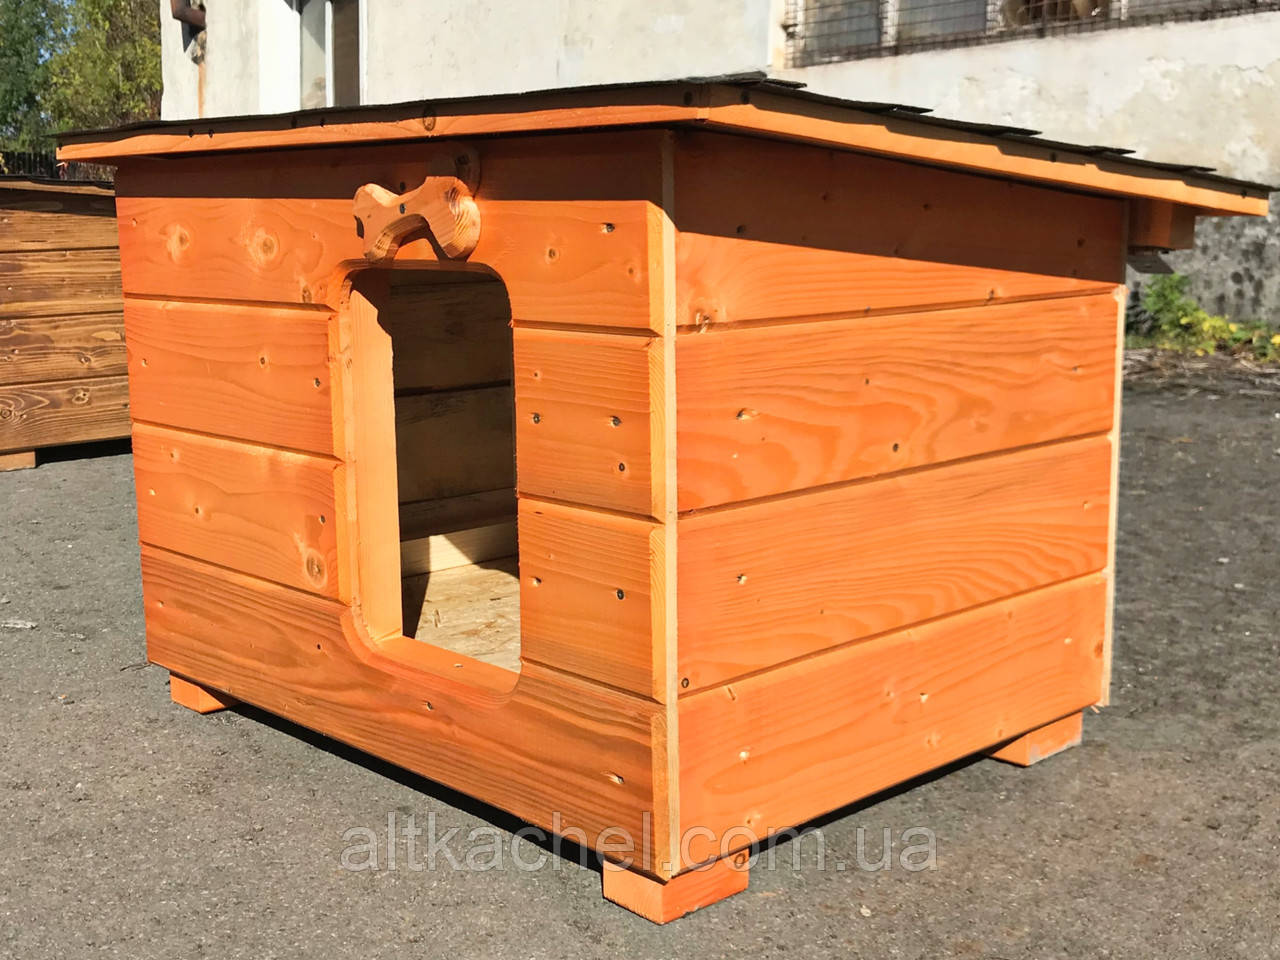 

Деревянная будка с открывающейся крышей, для собаки (разборная) 50х70см (внутри)